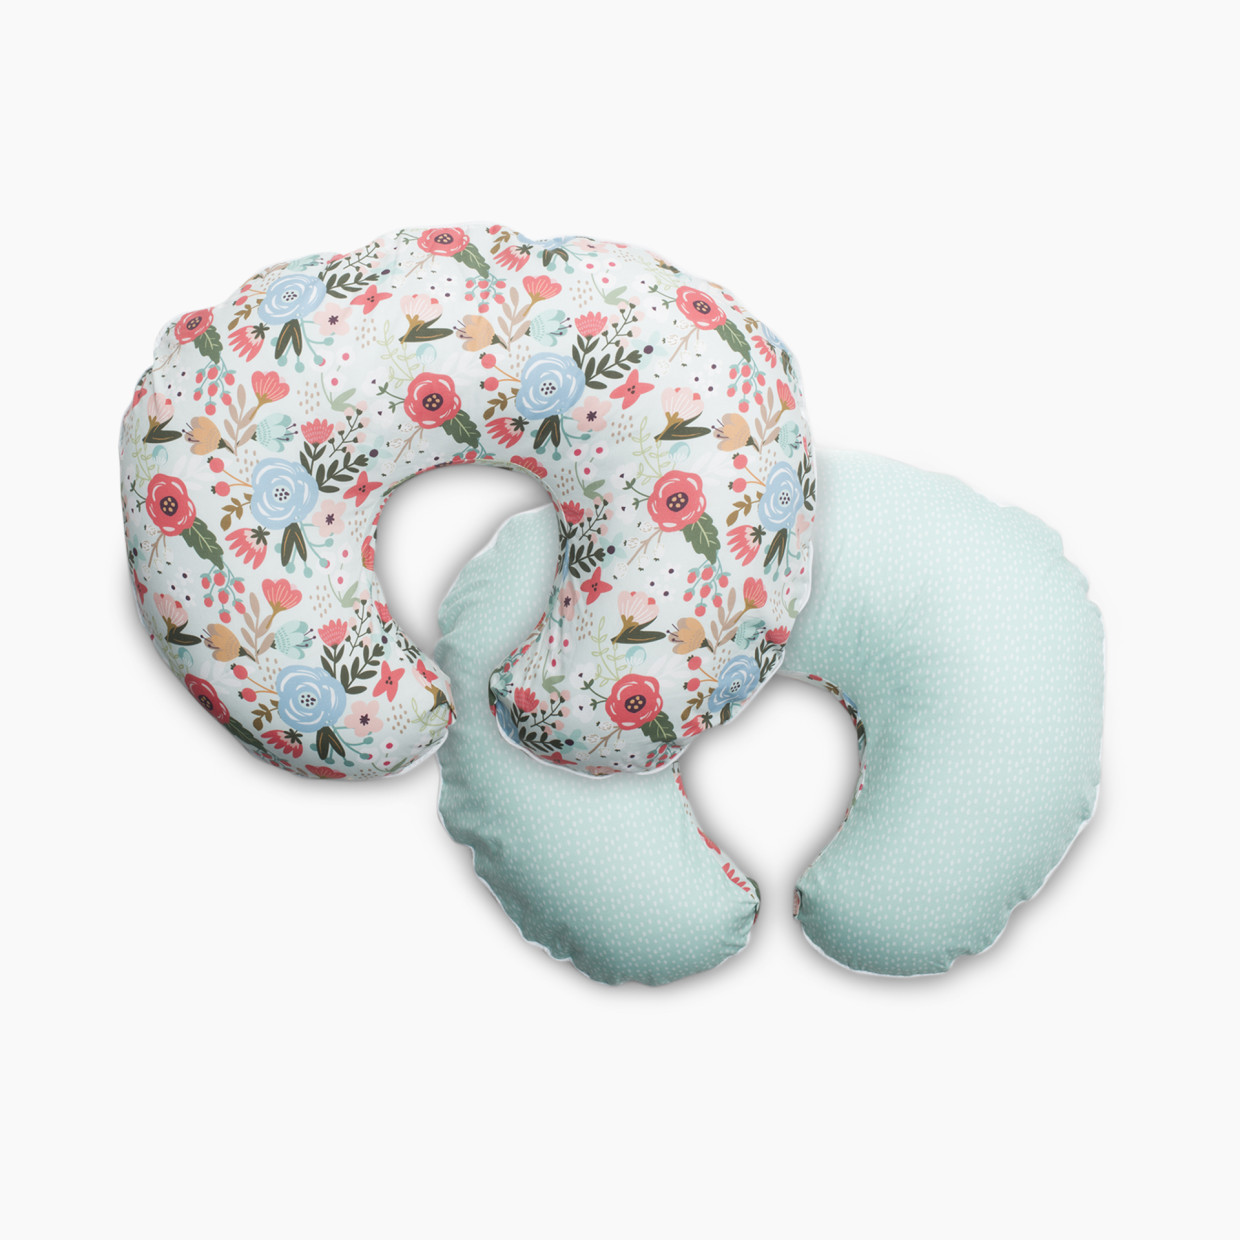 Boppy Premium Nursing Support Pillow Cover - Mint Floral.